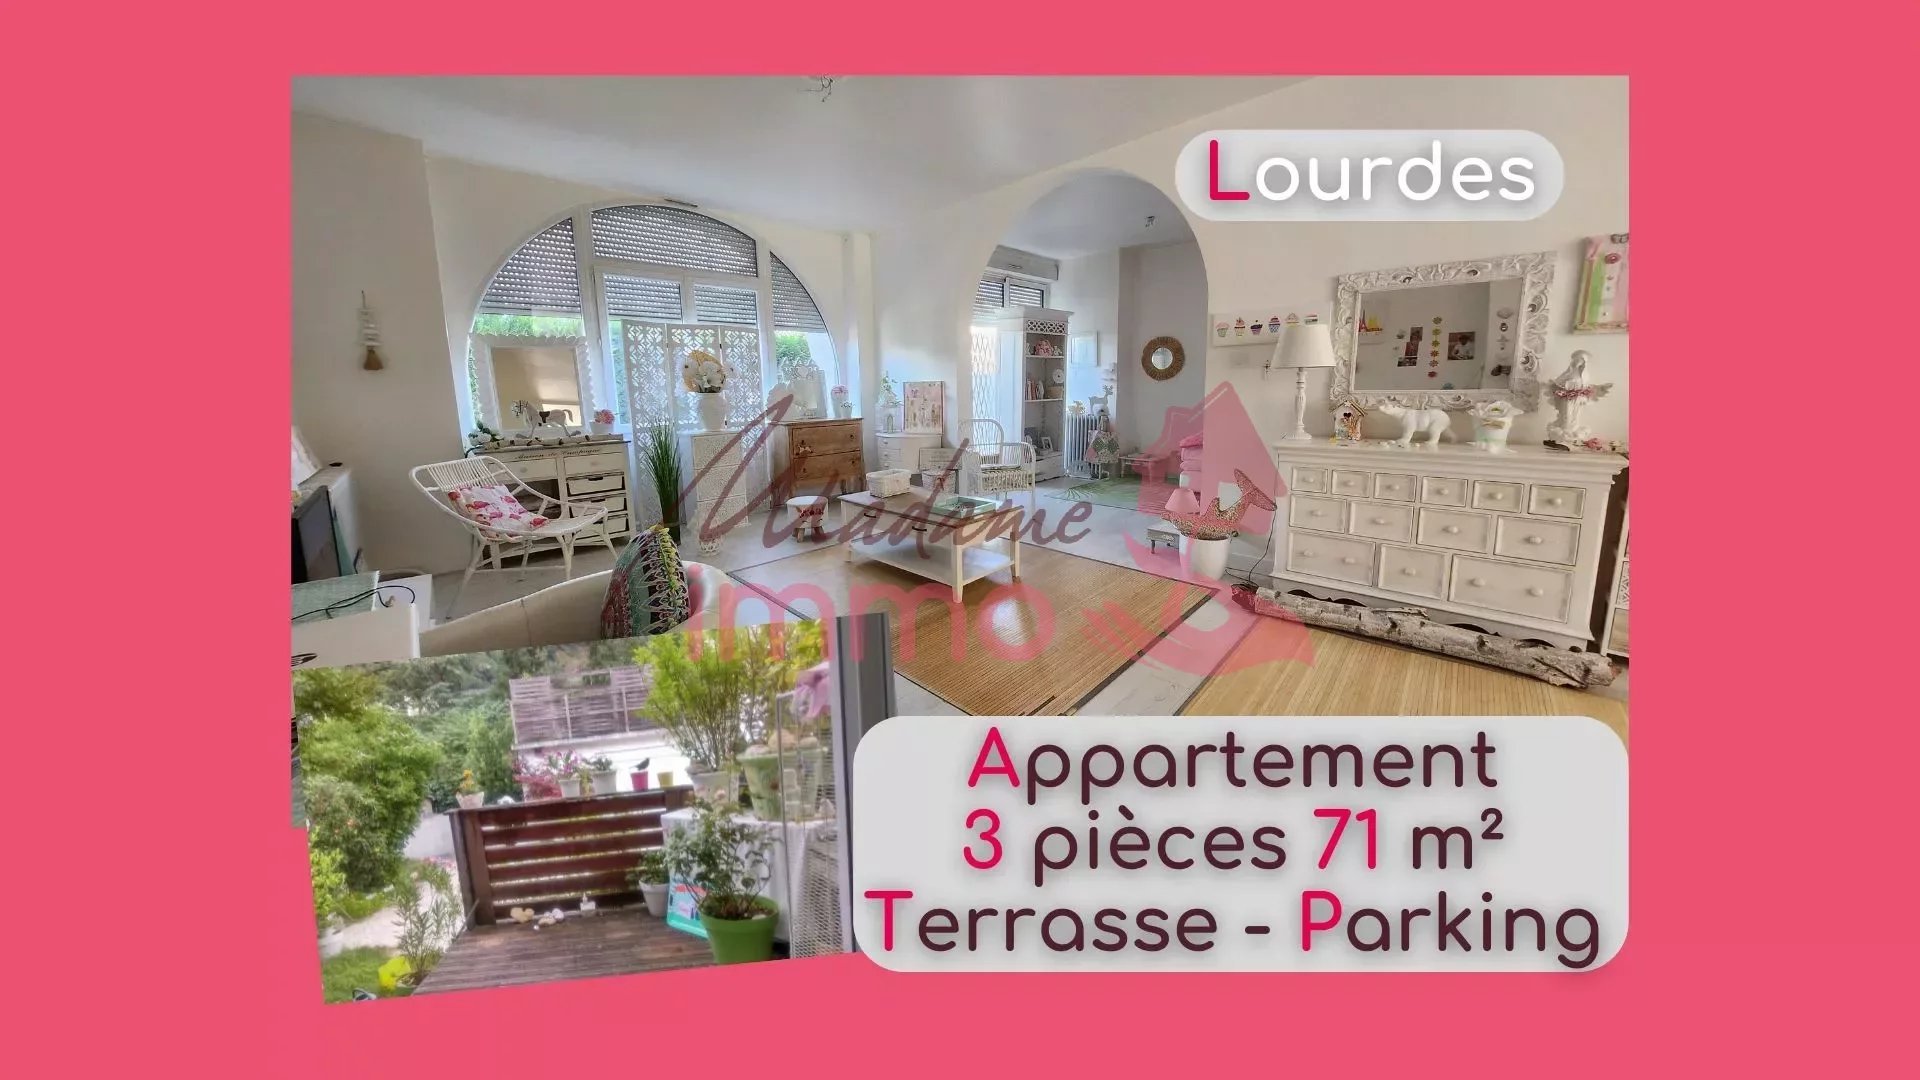 Appartement 3 pièces 71 m² Lourdes